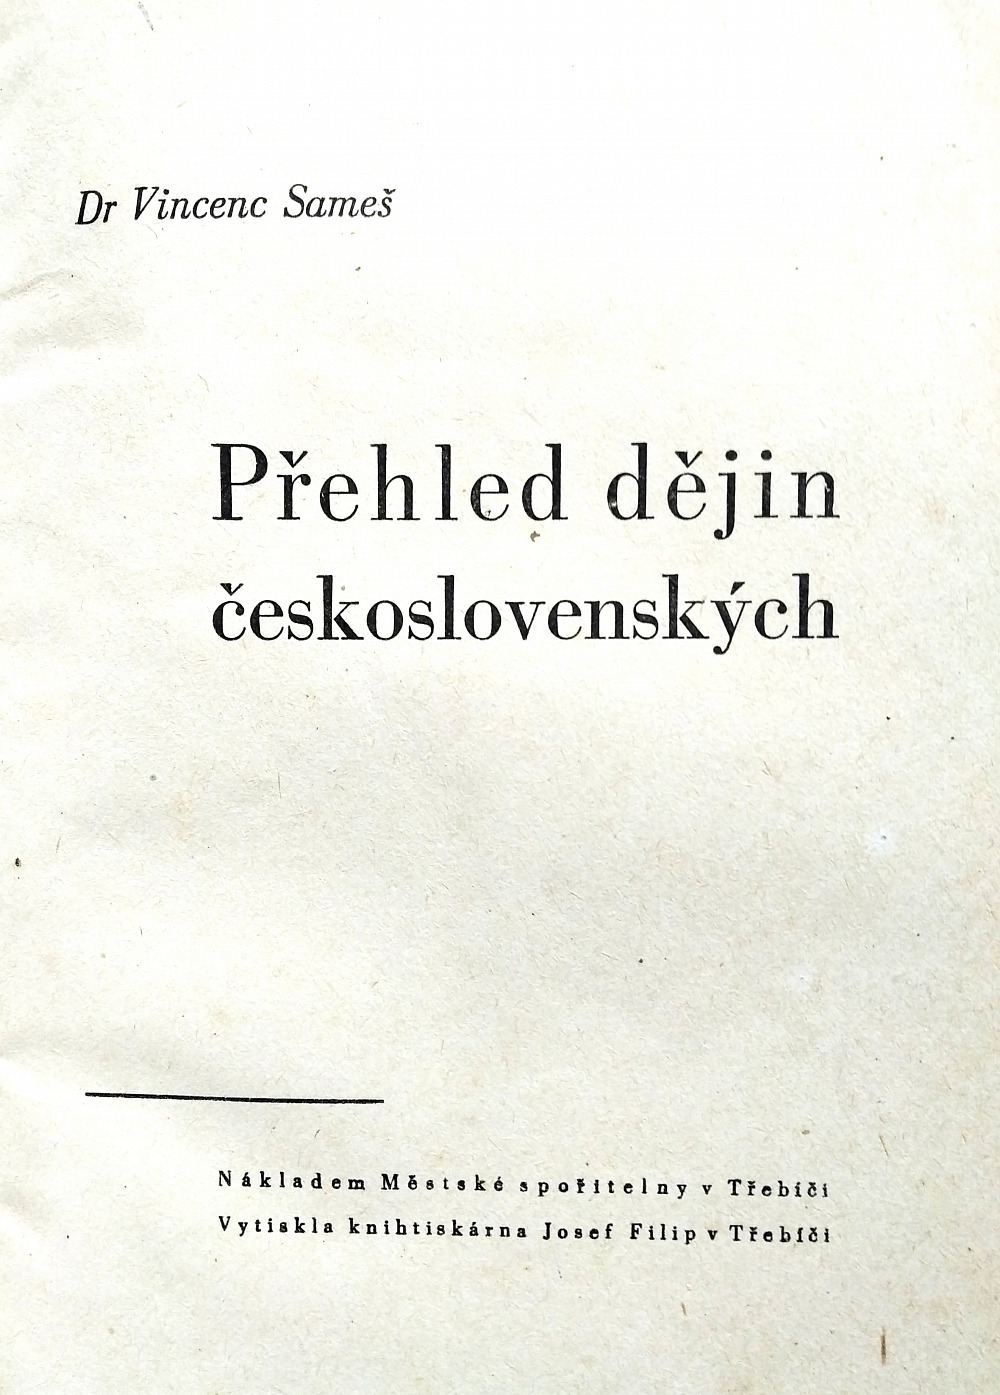 Přehled dějin československých